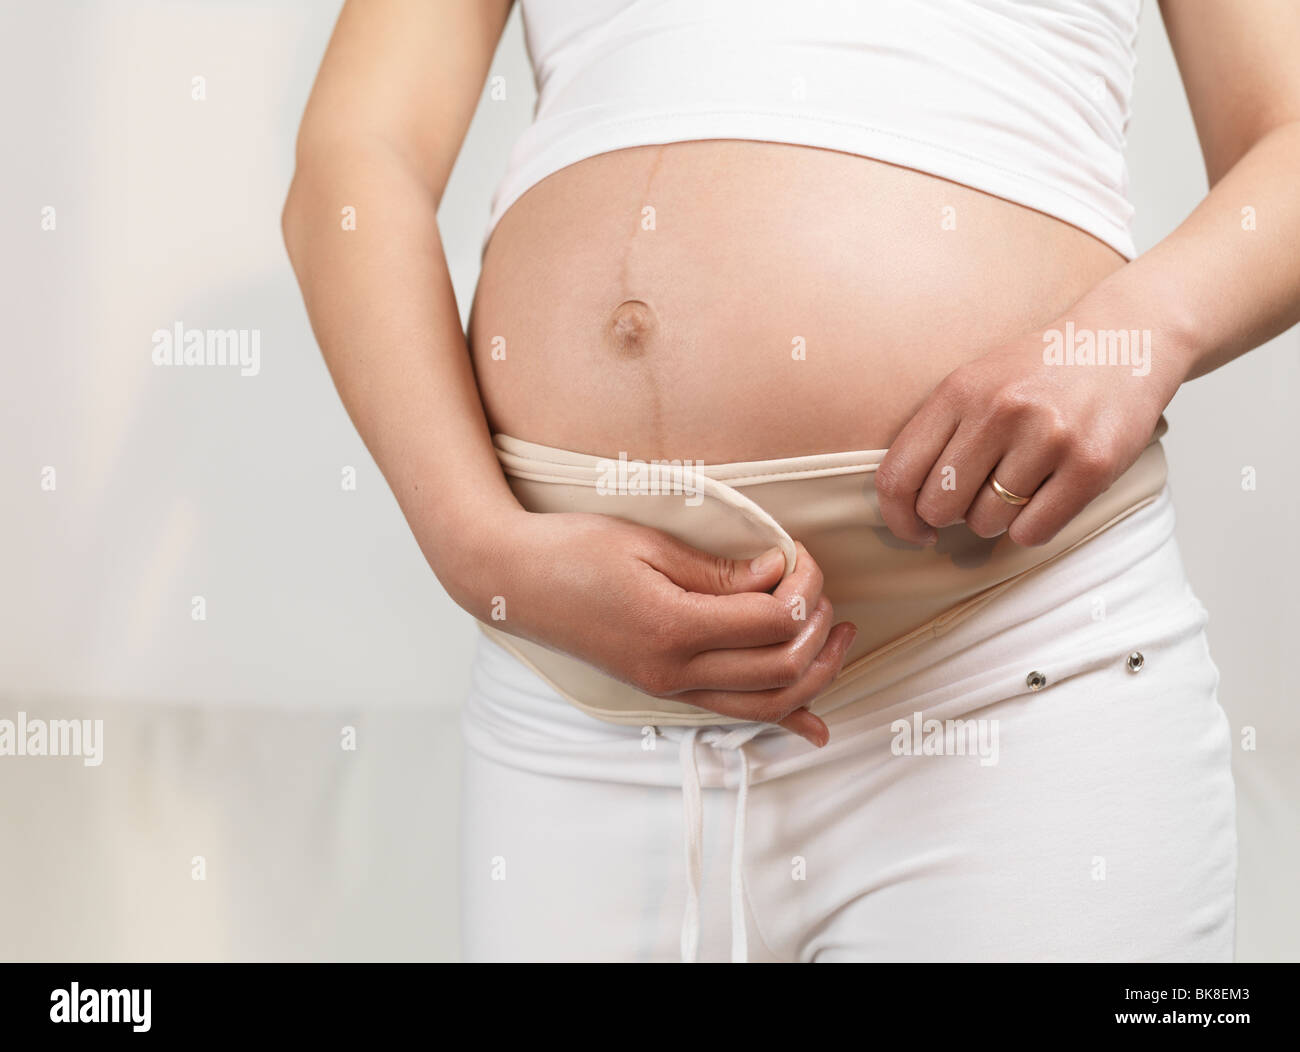 Près d'une femme enceinte portant une ceinture de grossesse Photo Stock -  Alamy